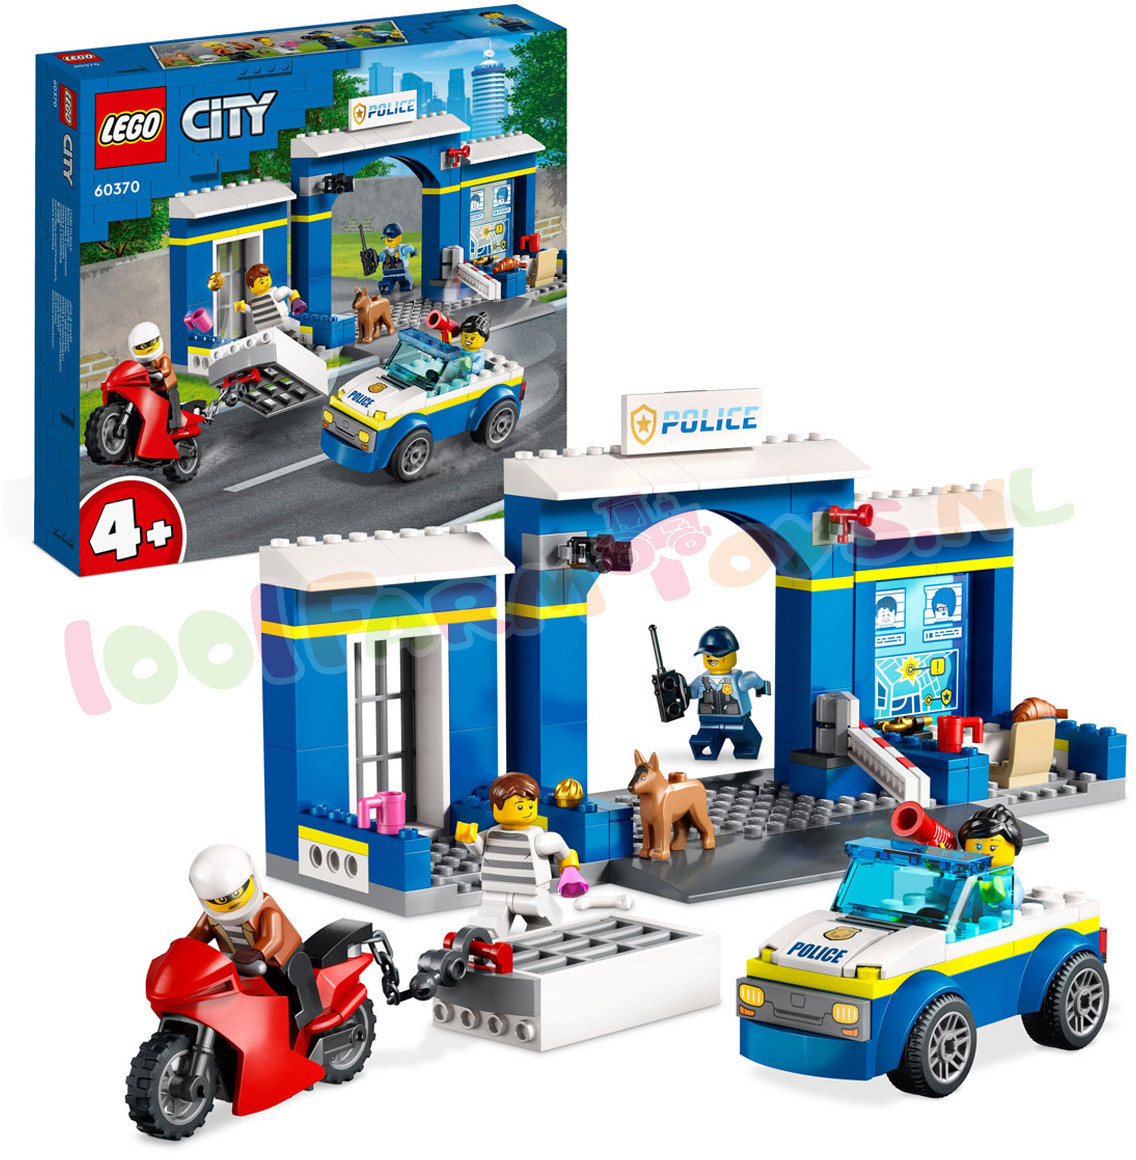 piek Spoedig Luchtvaartmaatschappijen LEGO CITY AchterVolging PolitieBureau - 60370 - LEGO City - LEGO -  1001Farmtoys landbouwspeelgoed - Laat kinderen van 4 jaar en ouder  kennismaken met